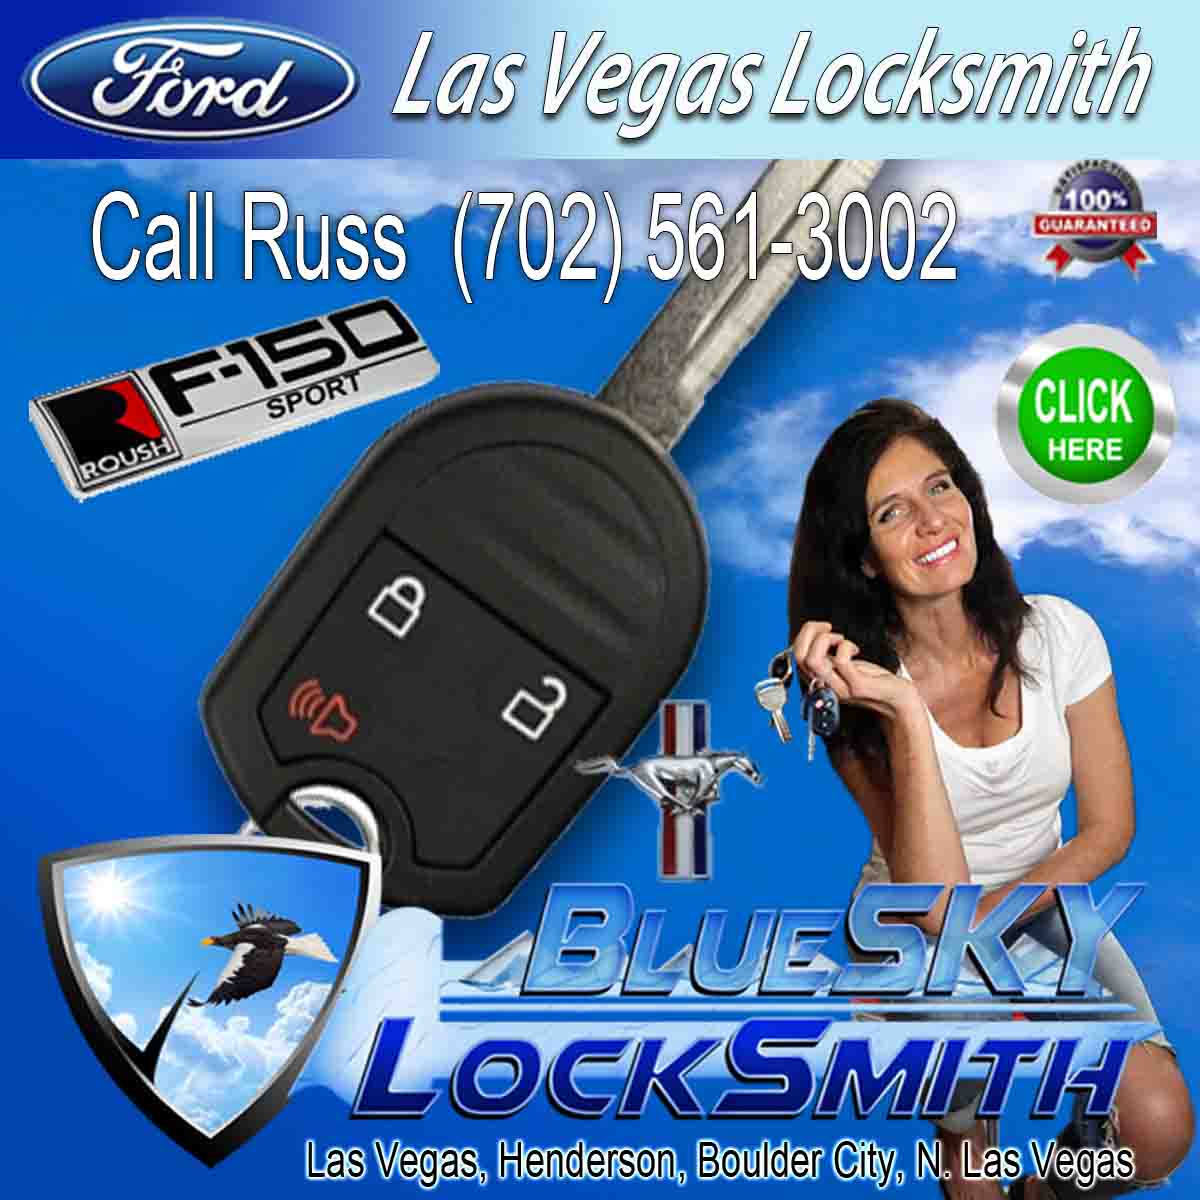 Car Key Locksmith Ford – Call Russ 702-561-3002